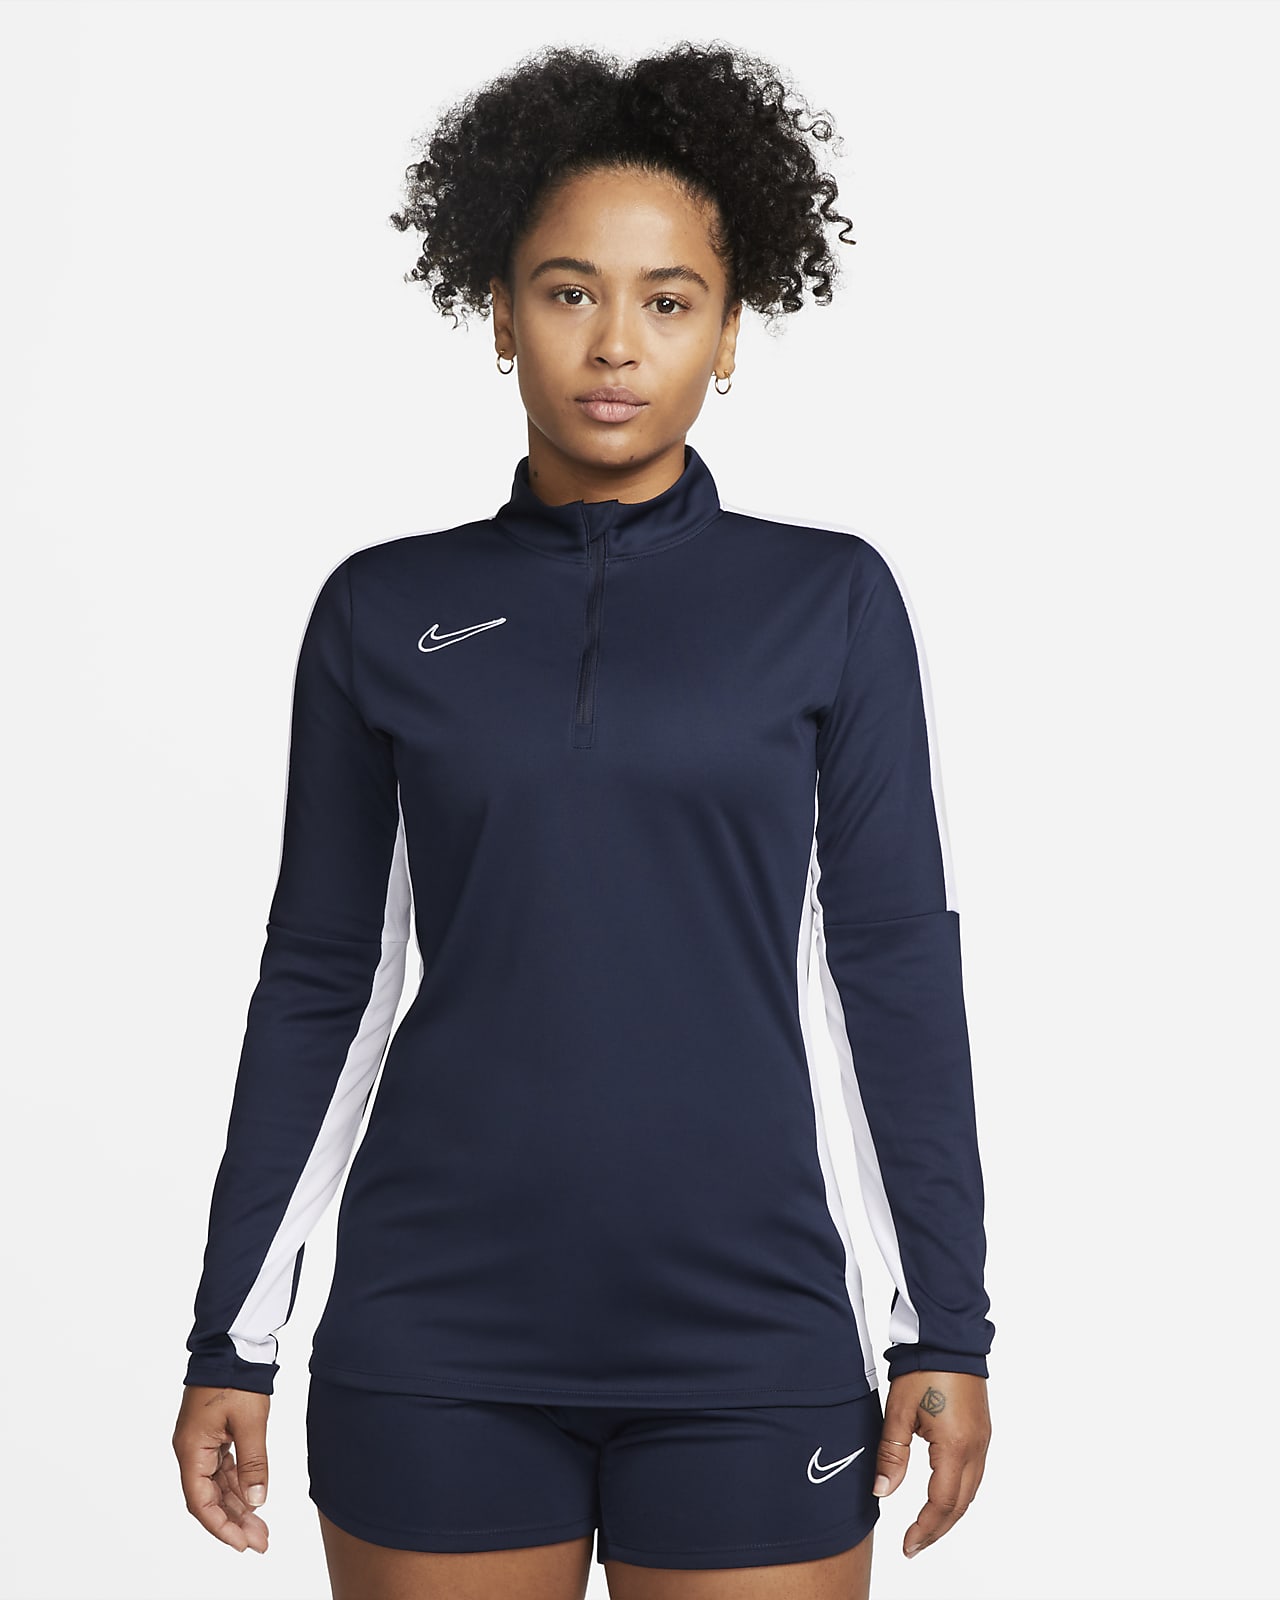 Nike Dri-FIT Academy női futball-melegítőfelső